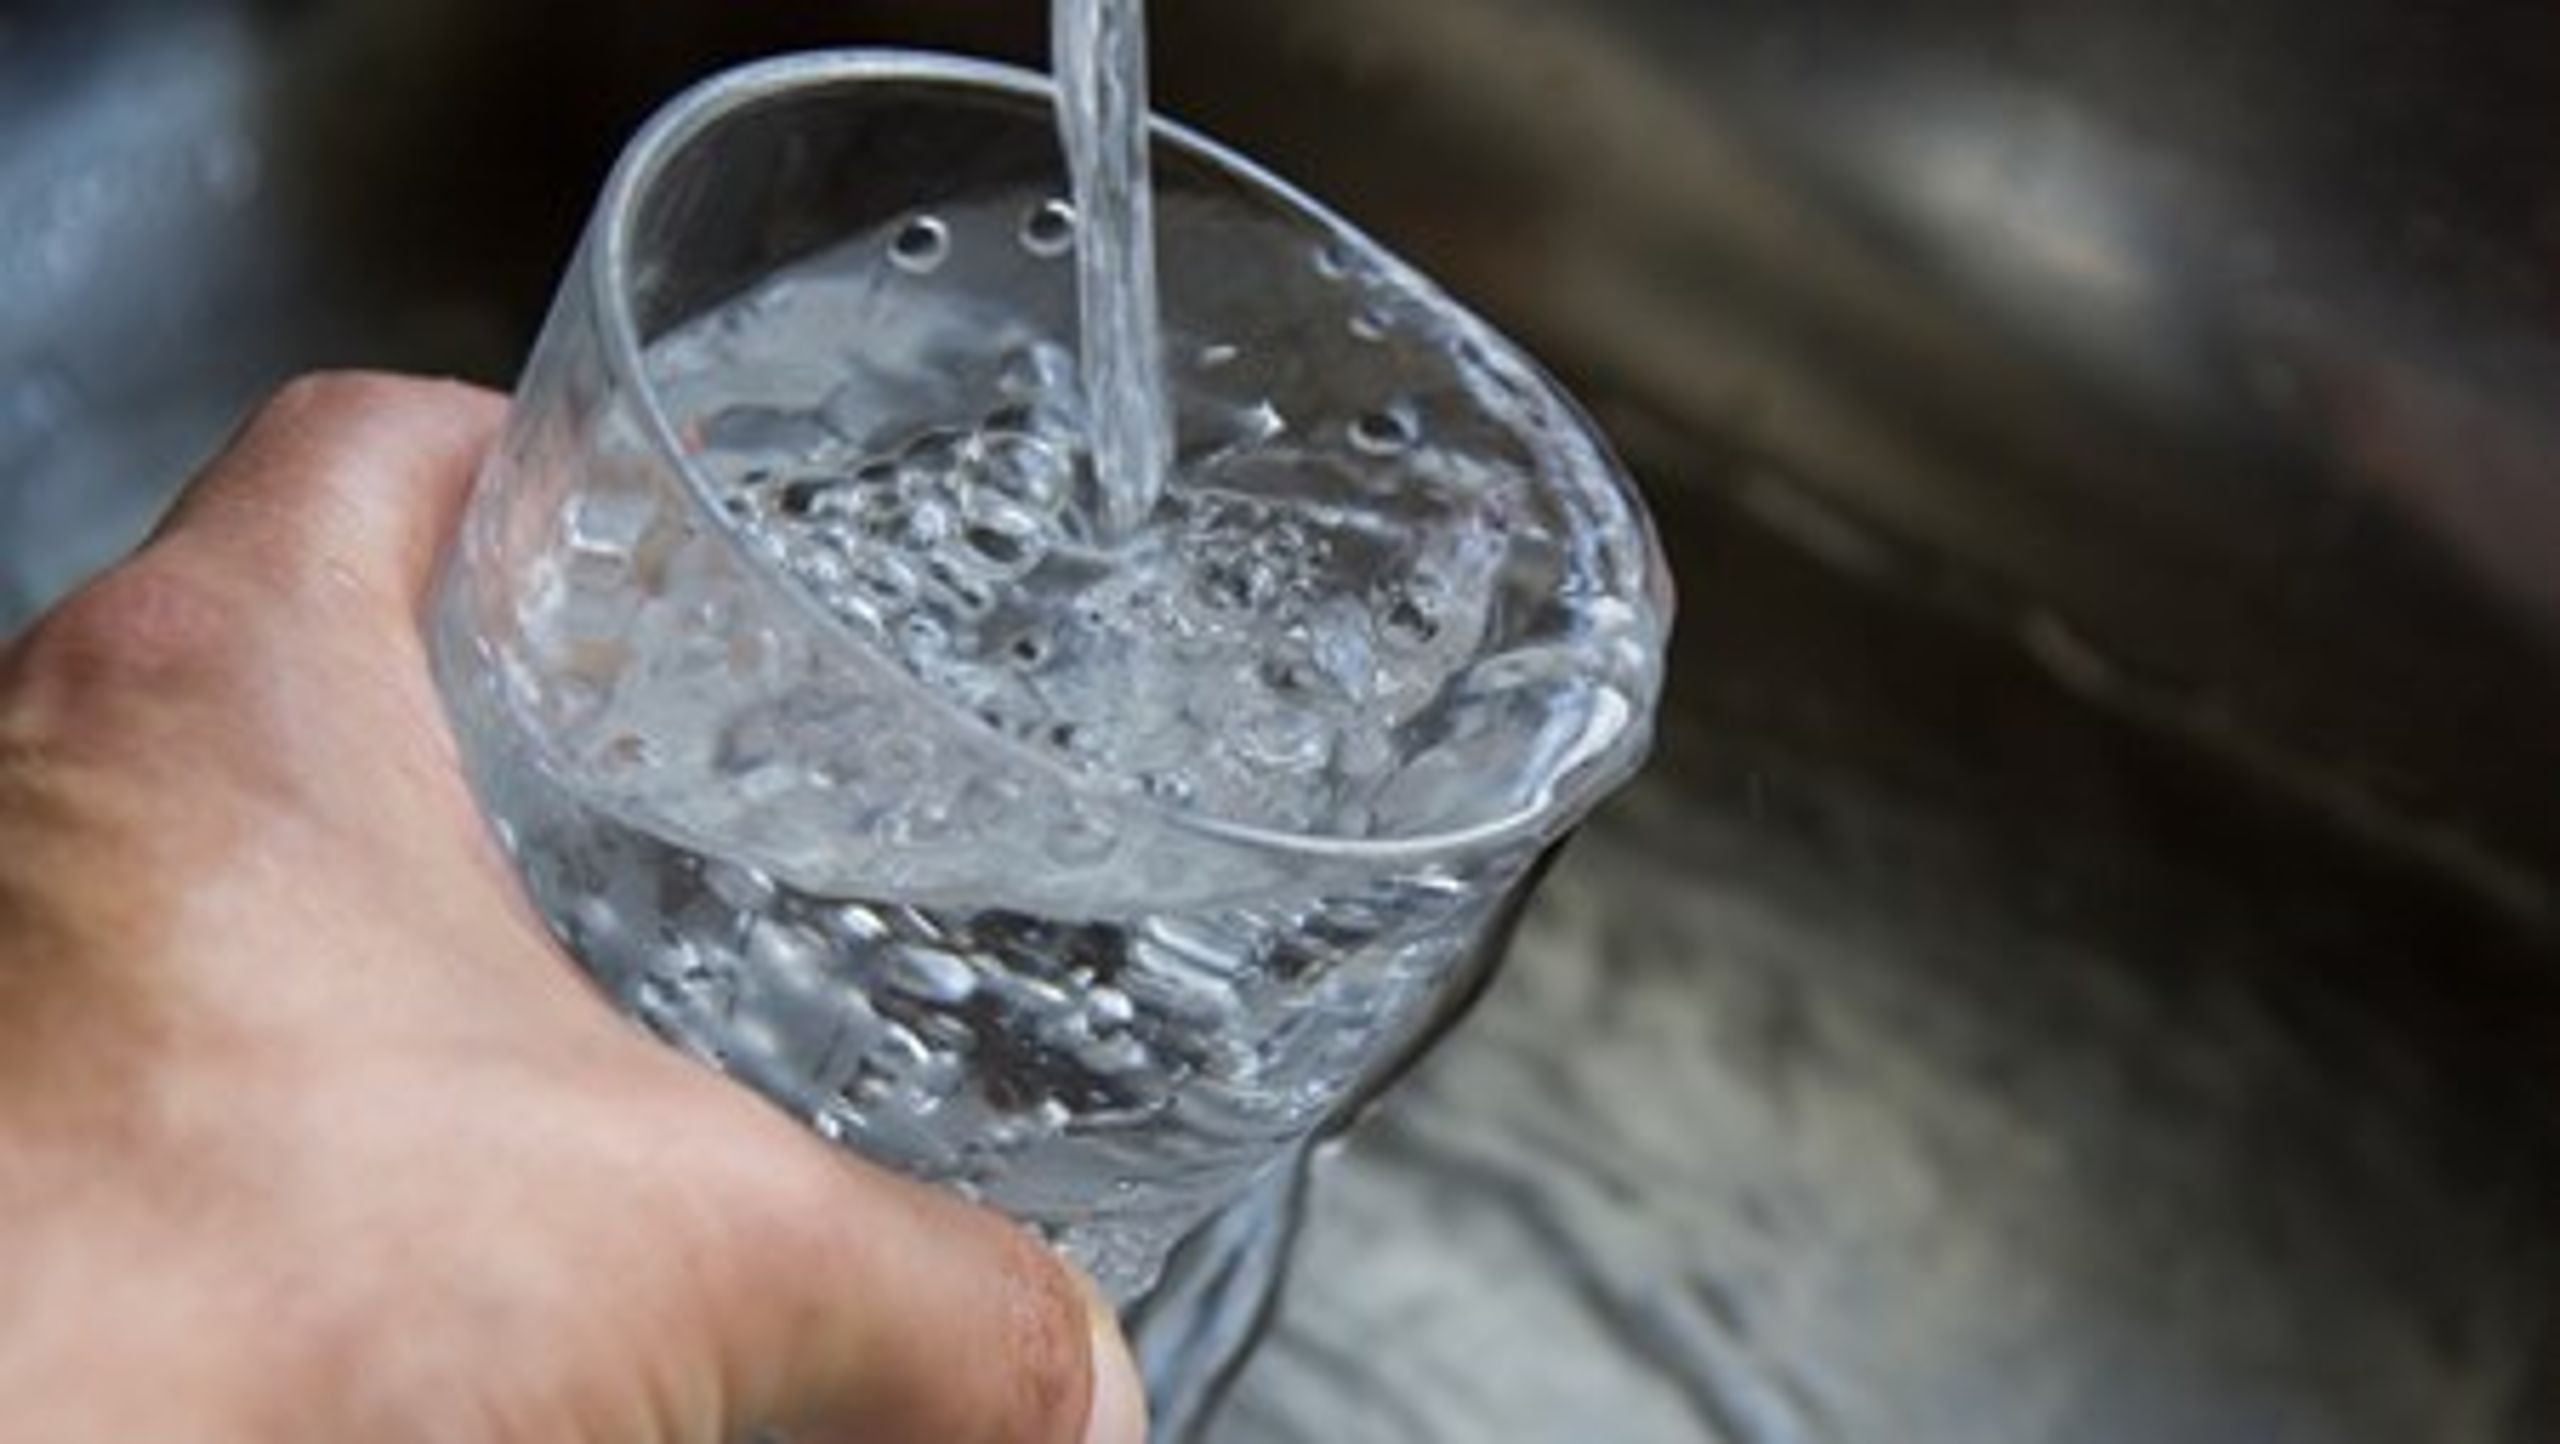 En ny vandsektorlov, som skal forhandles på plads i Folketingssalen i midten af&nbsp;december, risikerer ifølge de forbrugerejede vandværker at føre til højere priser på drikkevand.<br><br>